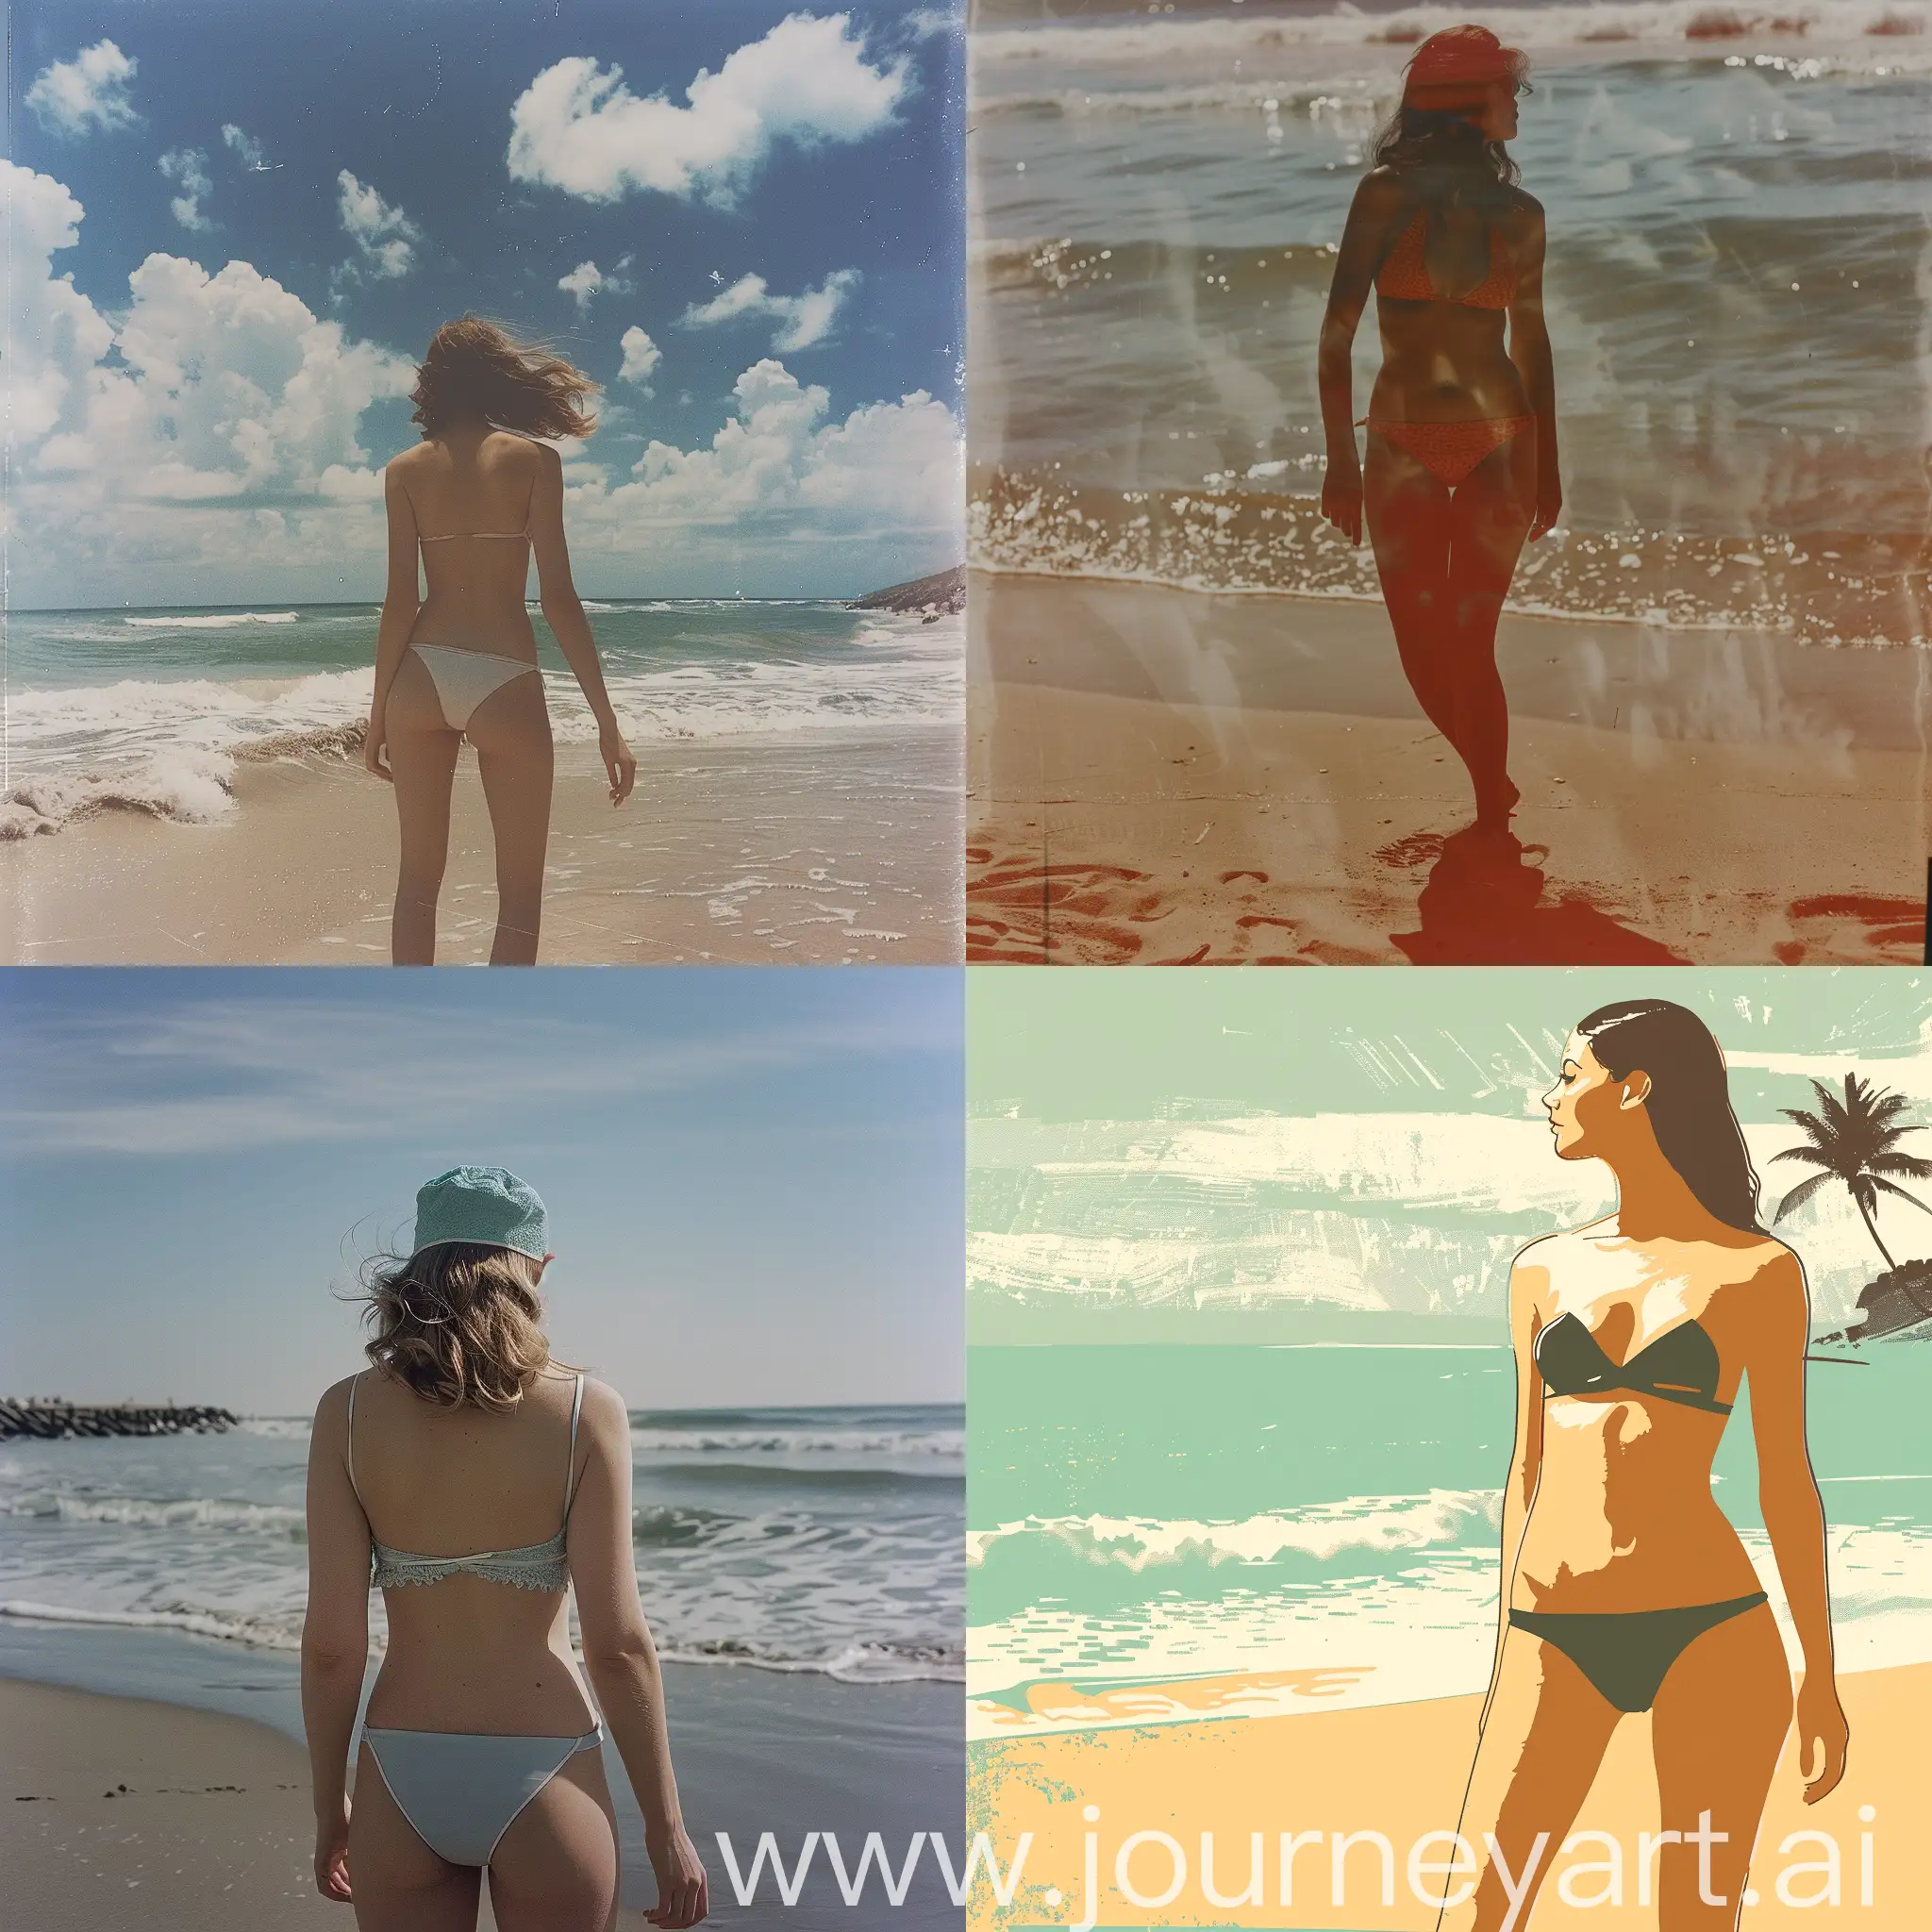 Beach-Scene-with-Swimsuit-Girl-Enjoying-the-Sun